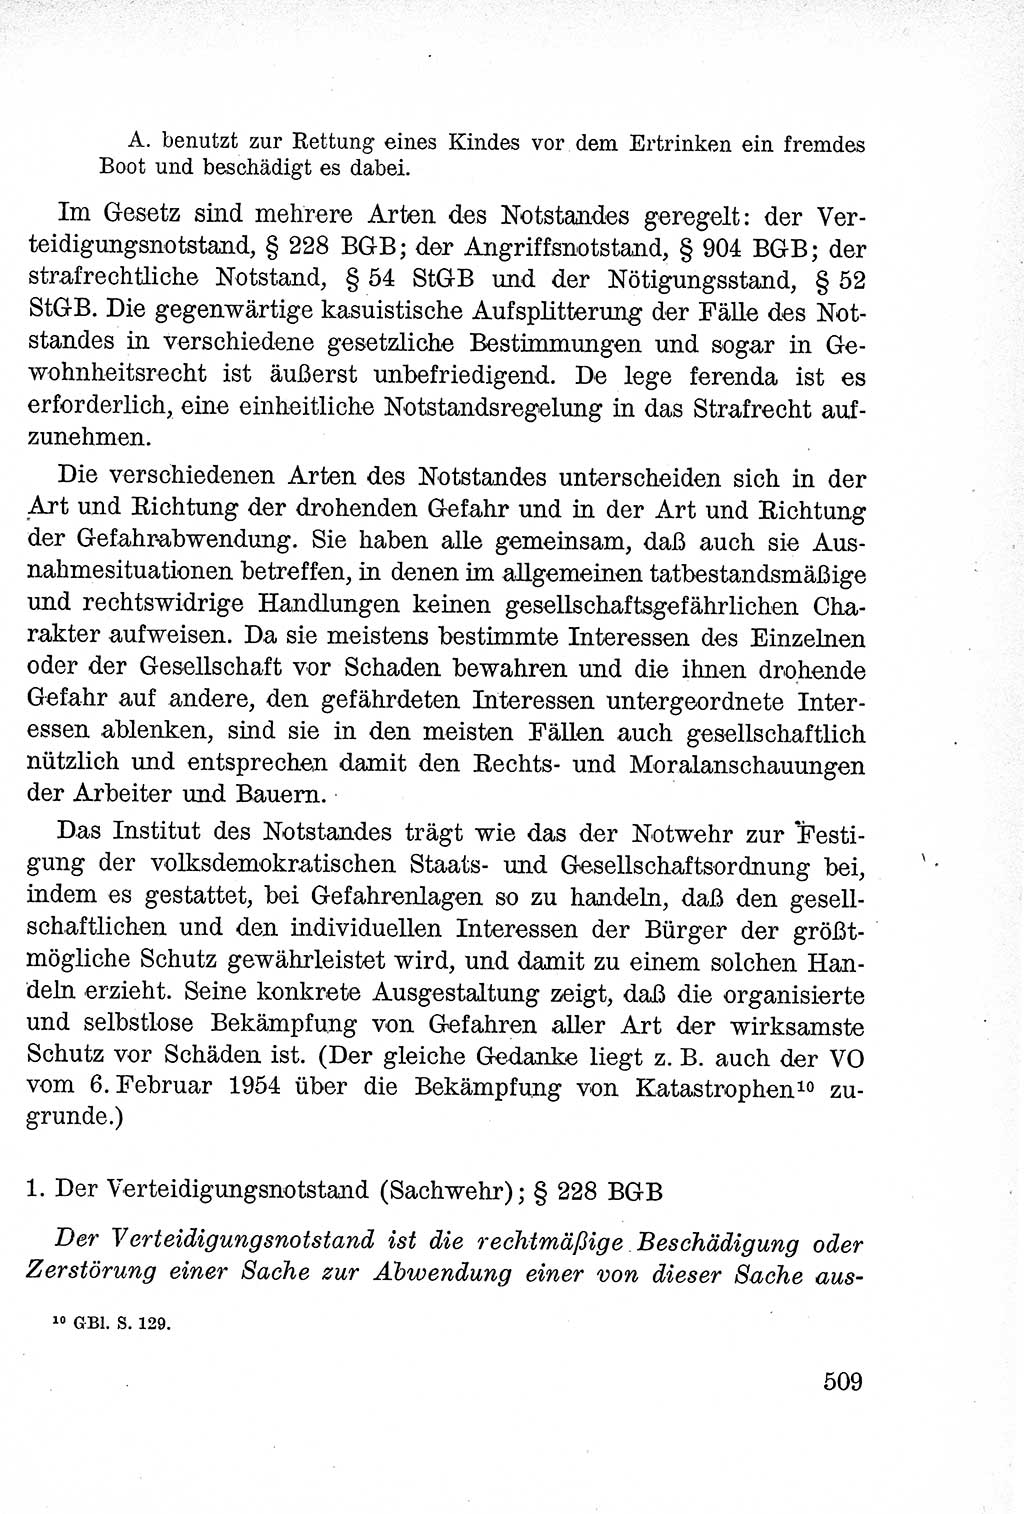 Lehrbuch des Strafrechts der Deutschen Demokratischen Republik (DDR), Allgemeiner Teil 1957, Seite 509 (Lb. Strafr. DDR AT 1957, S. 509)